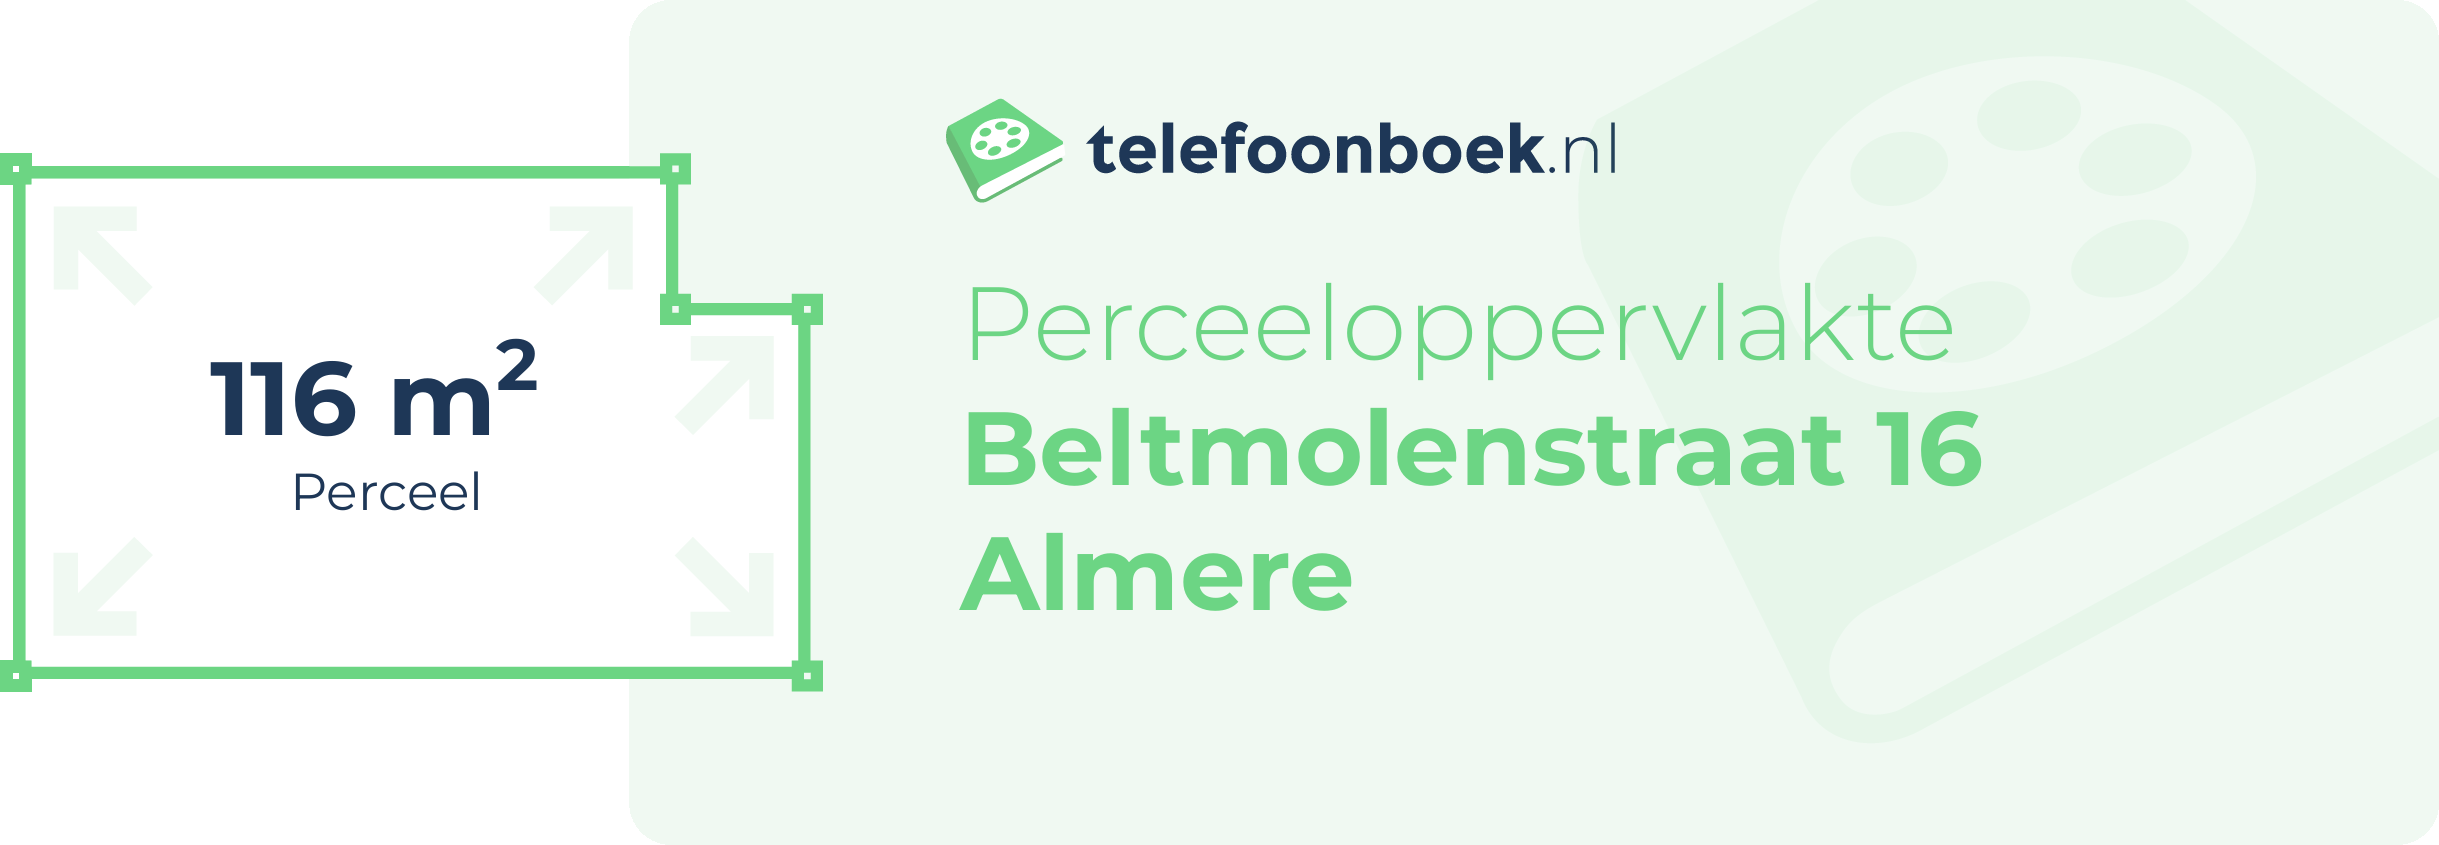 Perceeloppervlakte Beltmolenstraat 16 Almere